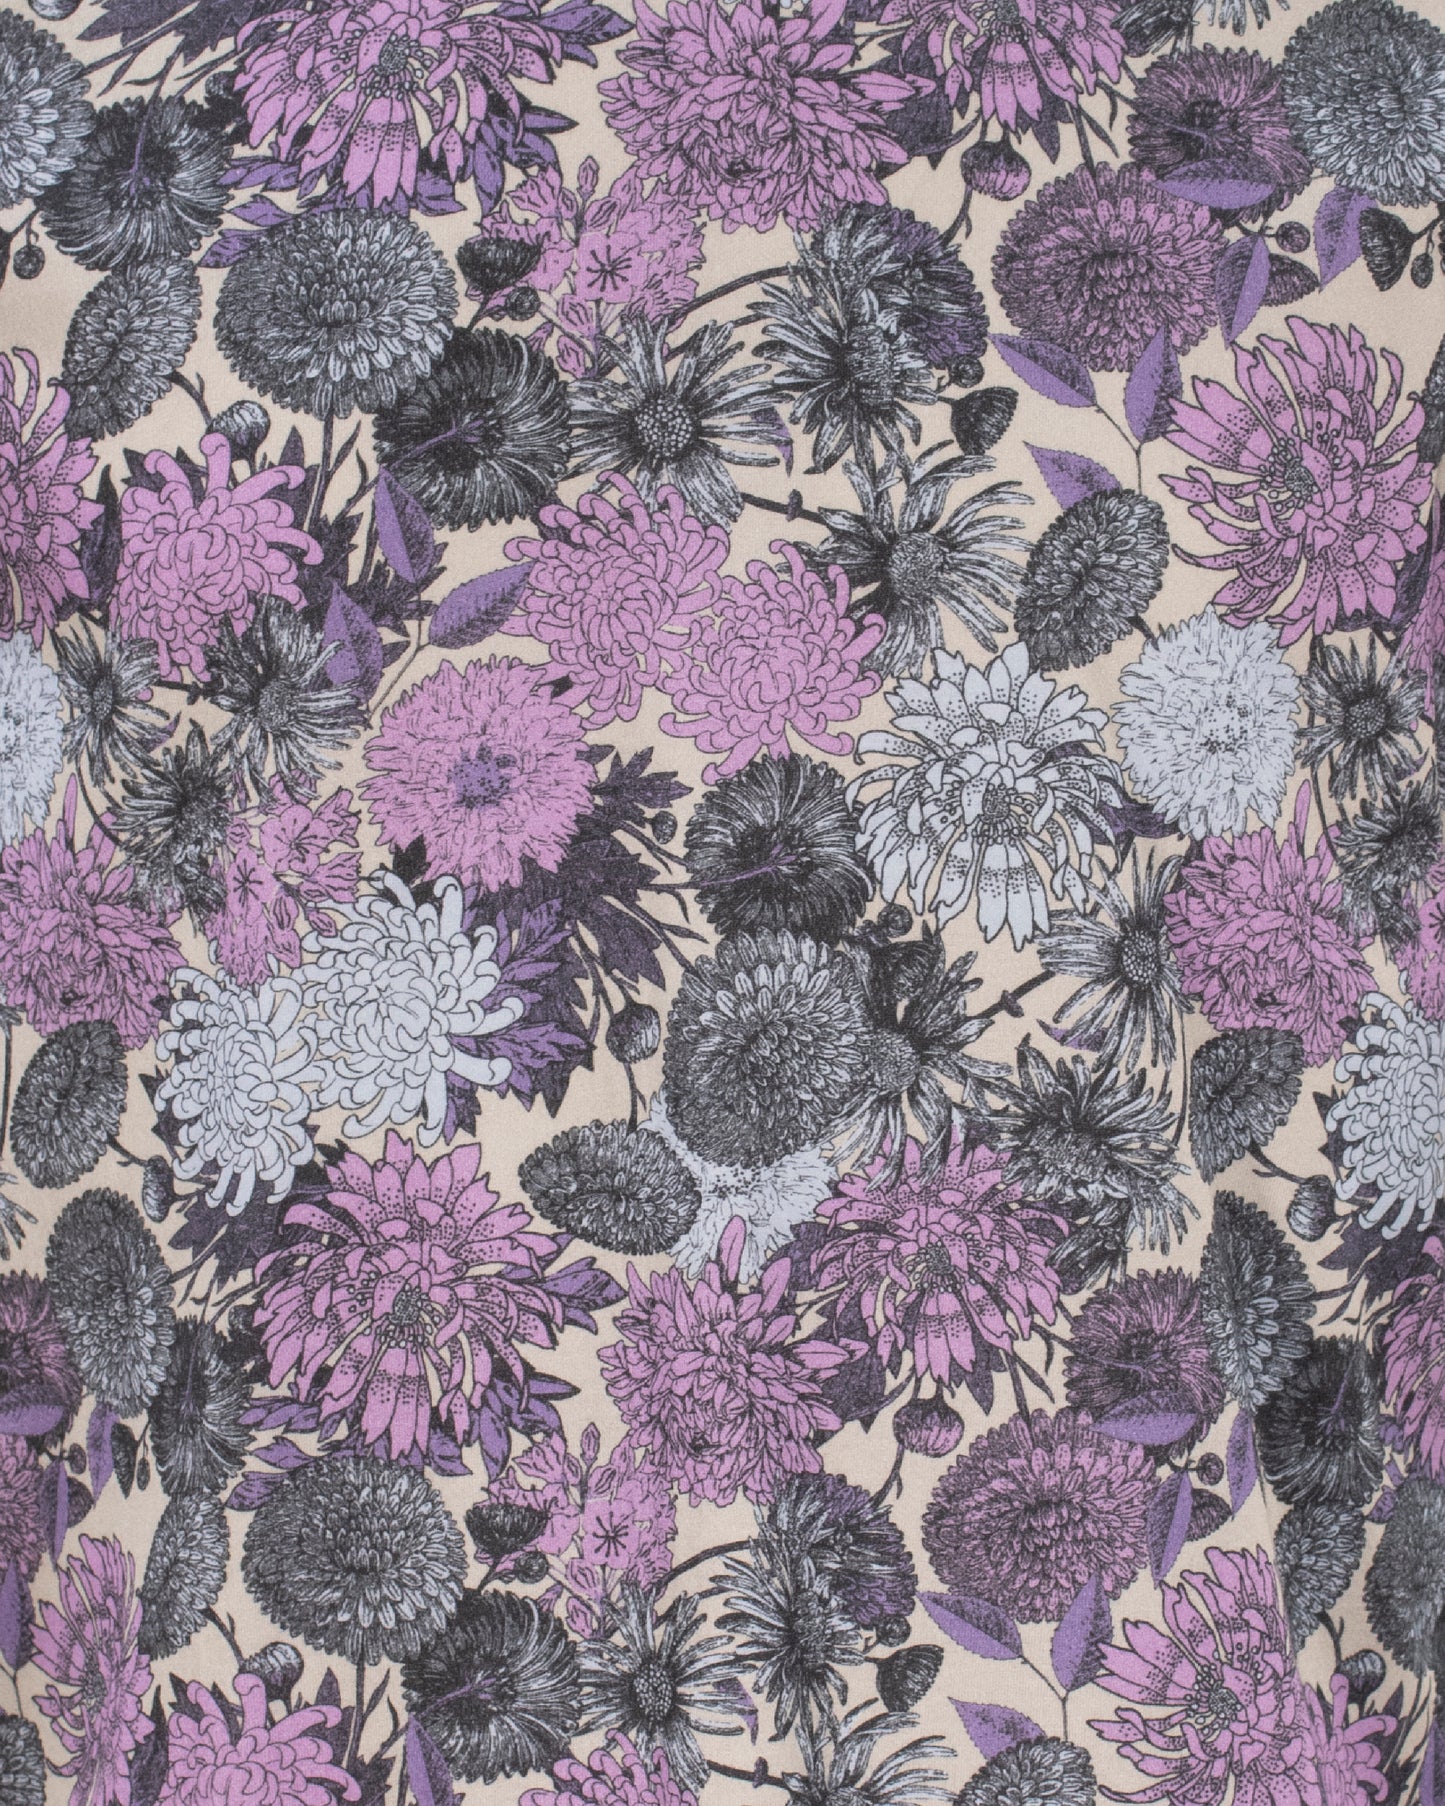 Maze Mums Floral Lavender V-Neck Shirt